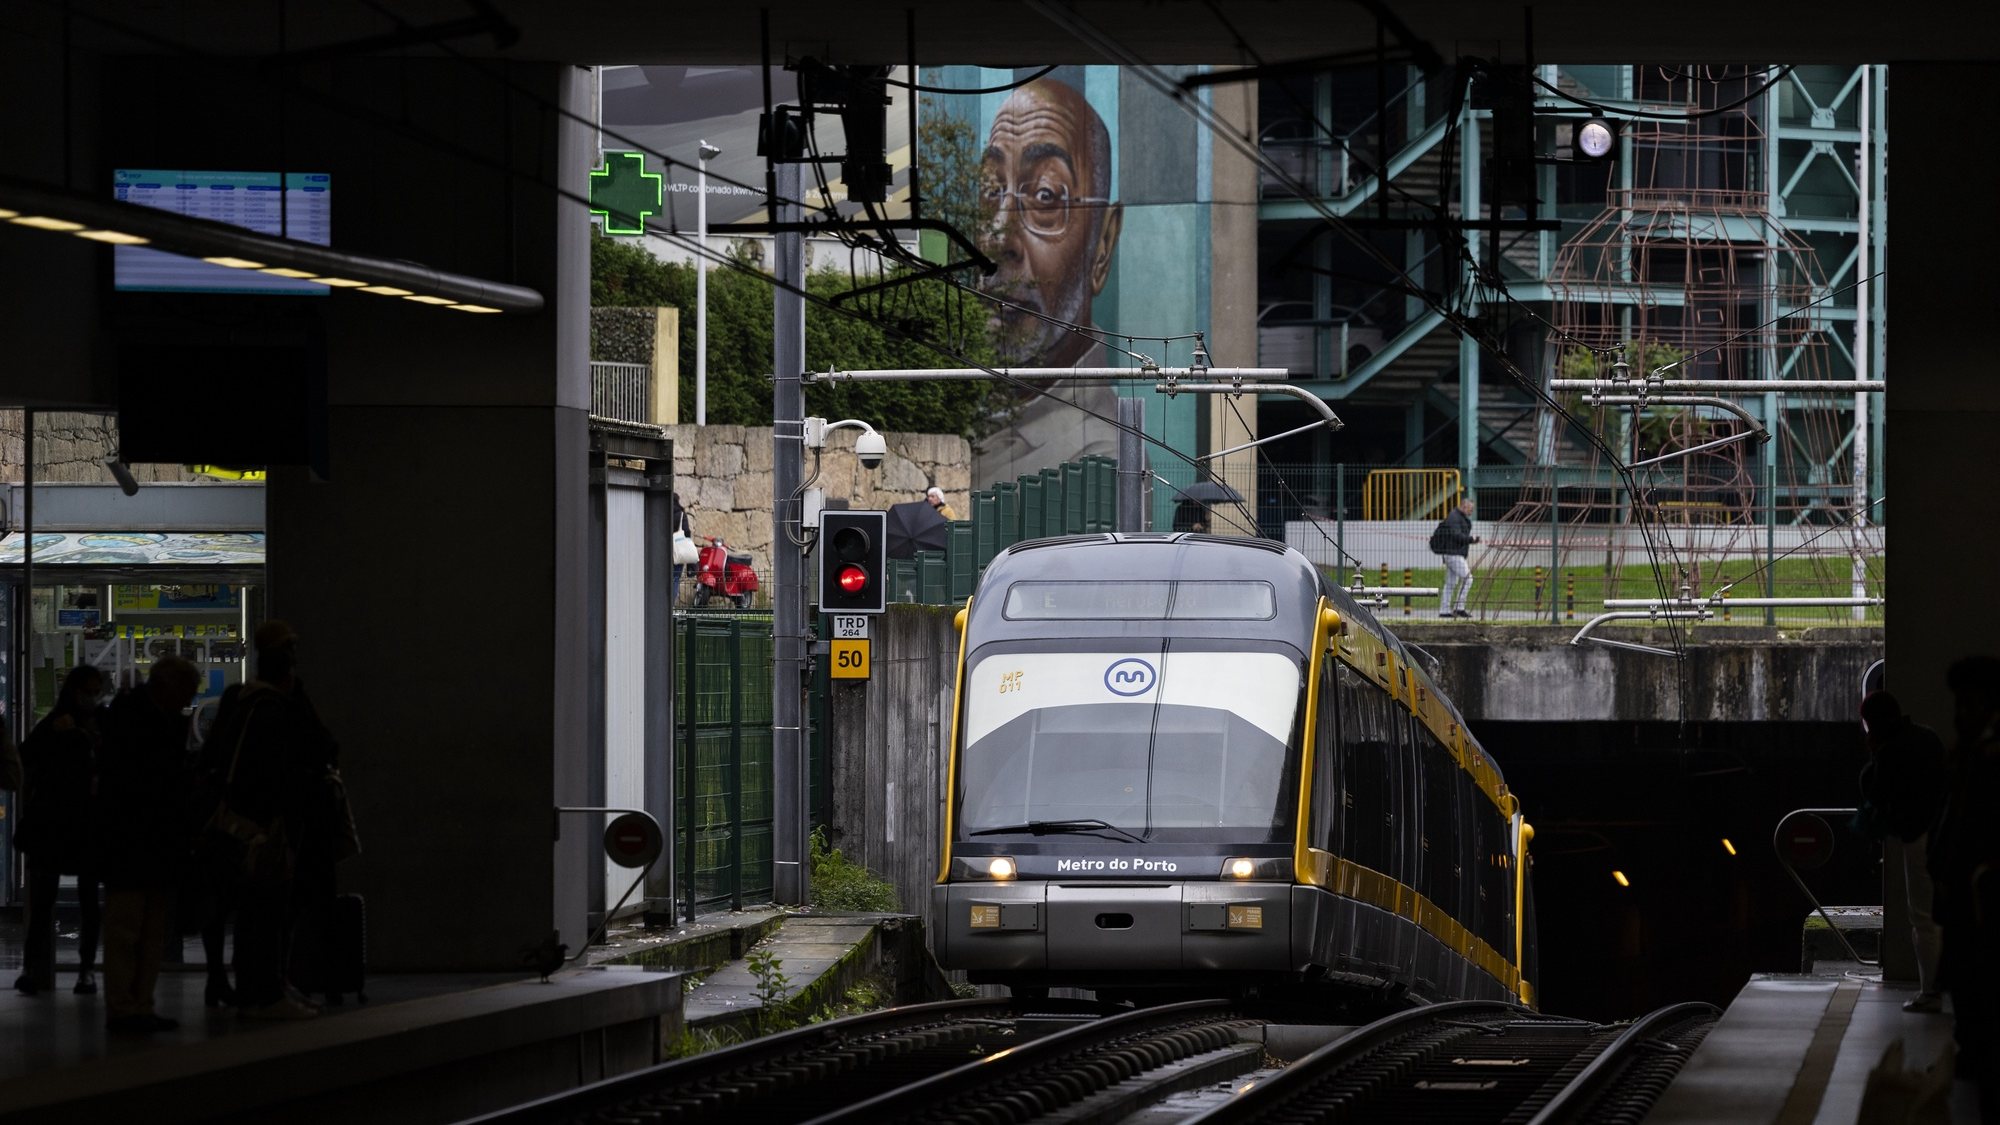 Um metro chega à estação de metro da Trindade no Porto, 5 de dezembro de 2022. O Metro do Porto celebra este mês o seu 20º Aniversário. (ACOMPANHA TEXTO DE 06 DE DEZEMBRO DE 2022). JOSÉ COELHO/LUSA